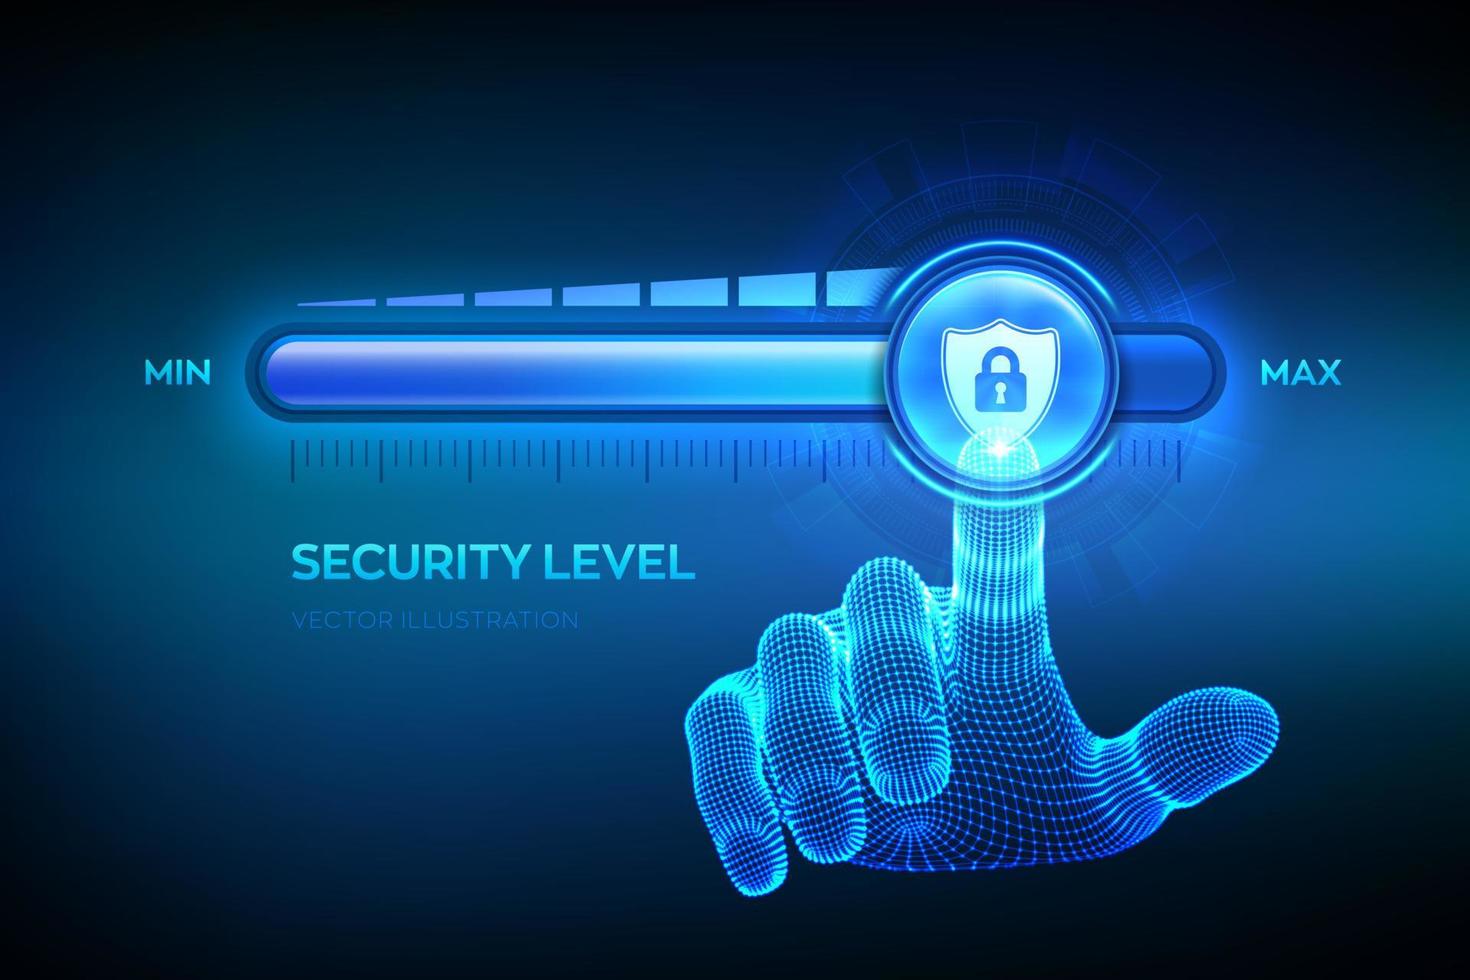 Sicherheitsniveau zu erhöhen. Cyber-Sicherheitskonzept. Wireframe-Hand zieht bis zur maximalen Positions-Fortschrittsleiste mit dem sicheren Schildsymbol hoch. Datenschutzniveau erhöhen. Vektor-Illustration. vektor